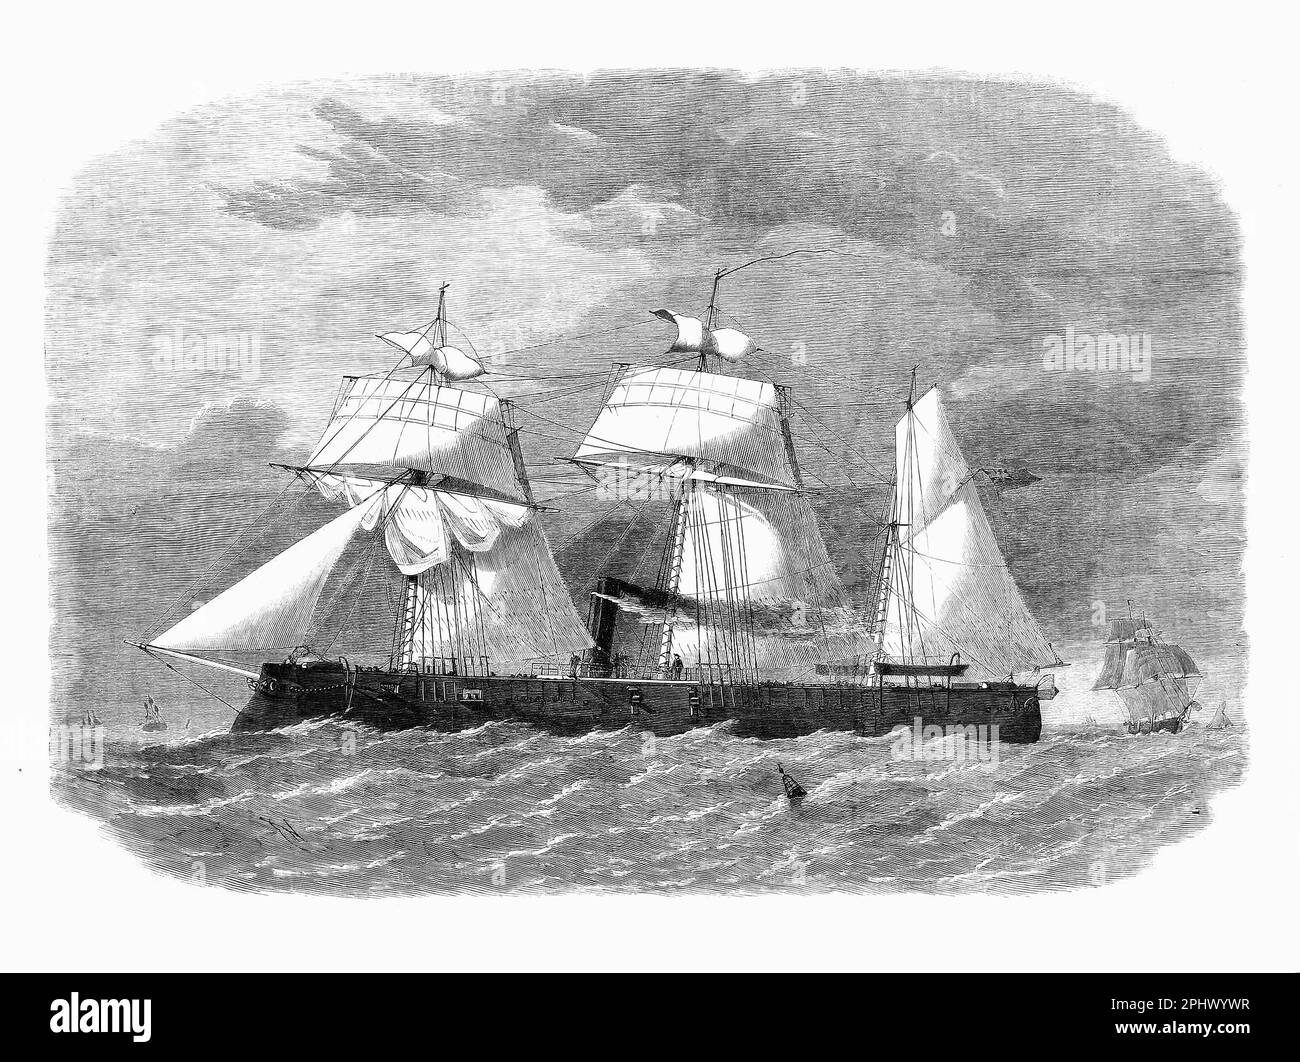 Die siebte HMS Enterprise der Royal Navy war eine gepanzerte Schlinge, die 1864 in Deptford Dockyard gestartet wurde. Ursprünglich war sie als hölzerne Schnecke der Camelion-Klasse ausgelegt, wurde sie von Edward Reed umgestaltet und als zentrale Batterie vervollständigt. Das Schiff verbrachte den Großteil seiner Karriere in der Mittelmeerflotte, bevor es 1871 nach England zurückkehrte, wo es bezahlt wurde. Enterprise wurde 1885 als Schrott verkauft. Stockfoto